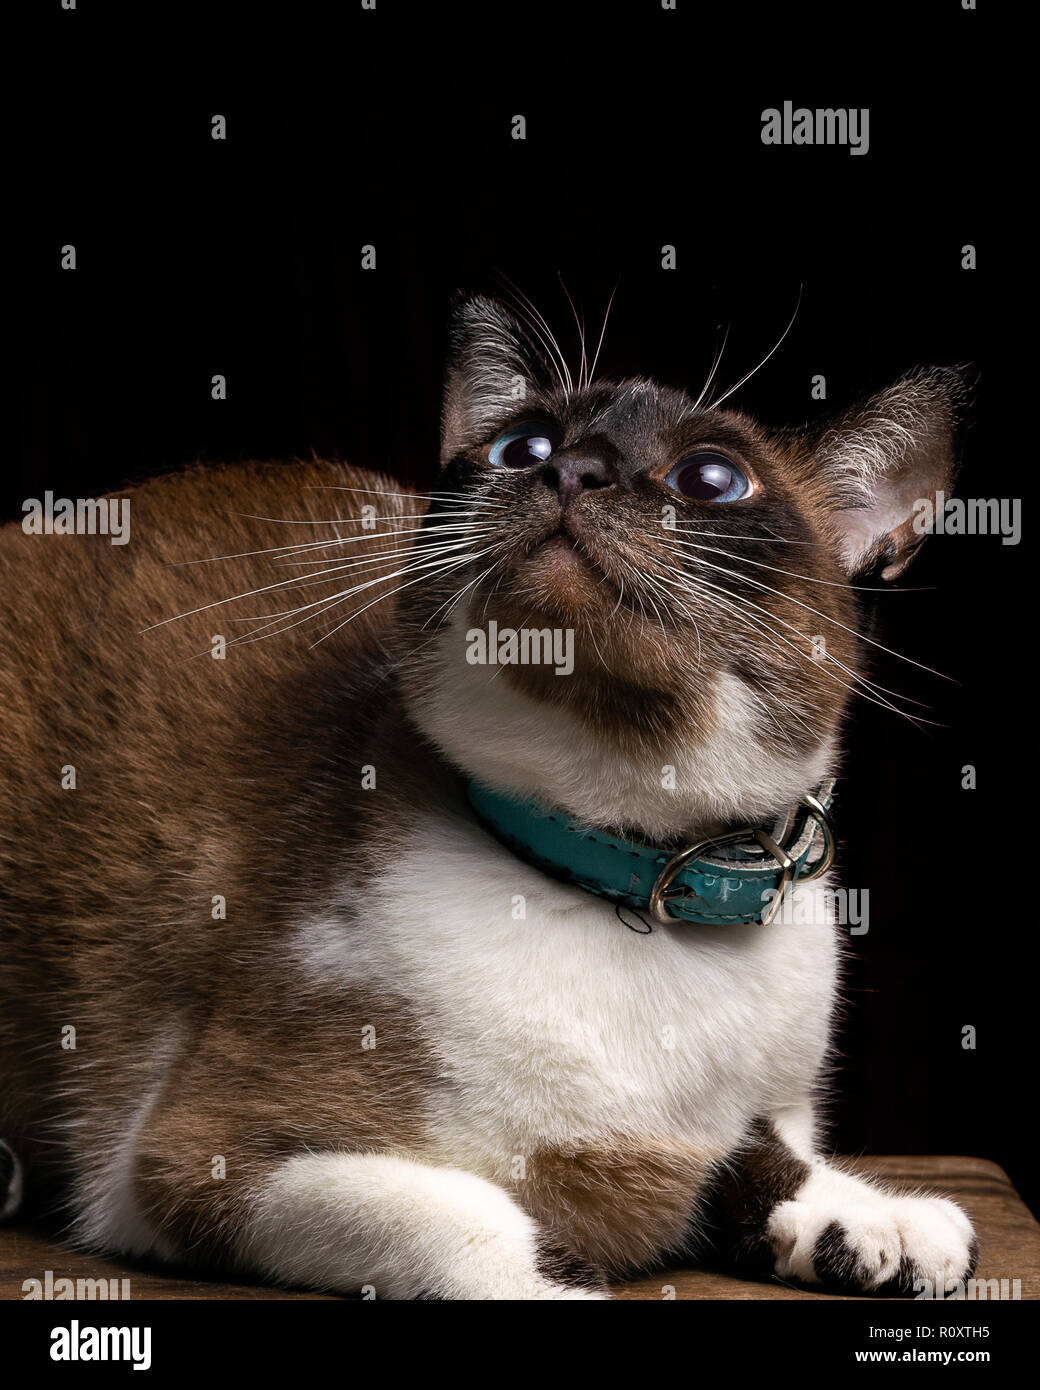 Hermoso gato atigrado mirando hacia arriba, Foto de estudio, fondo negro, retrato aislado Foto de stock